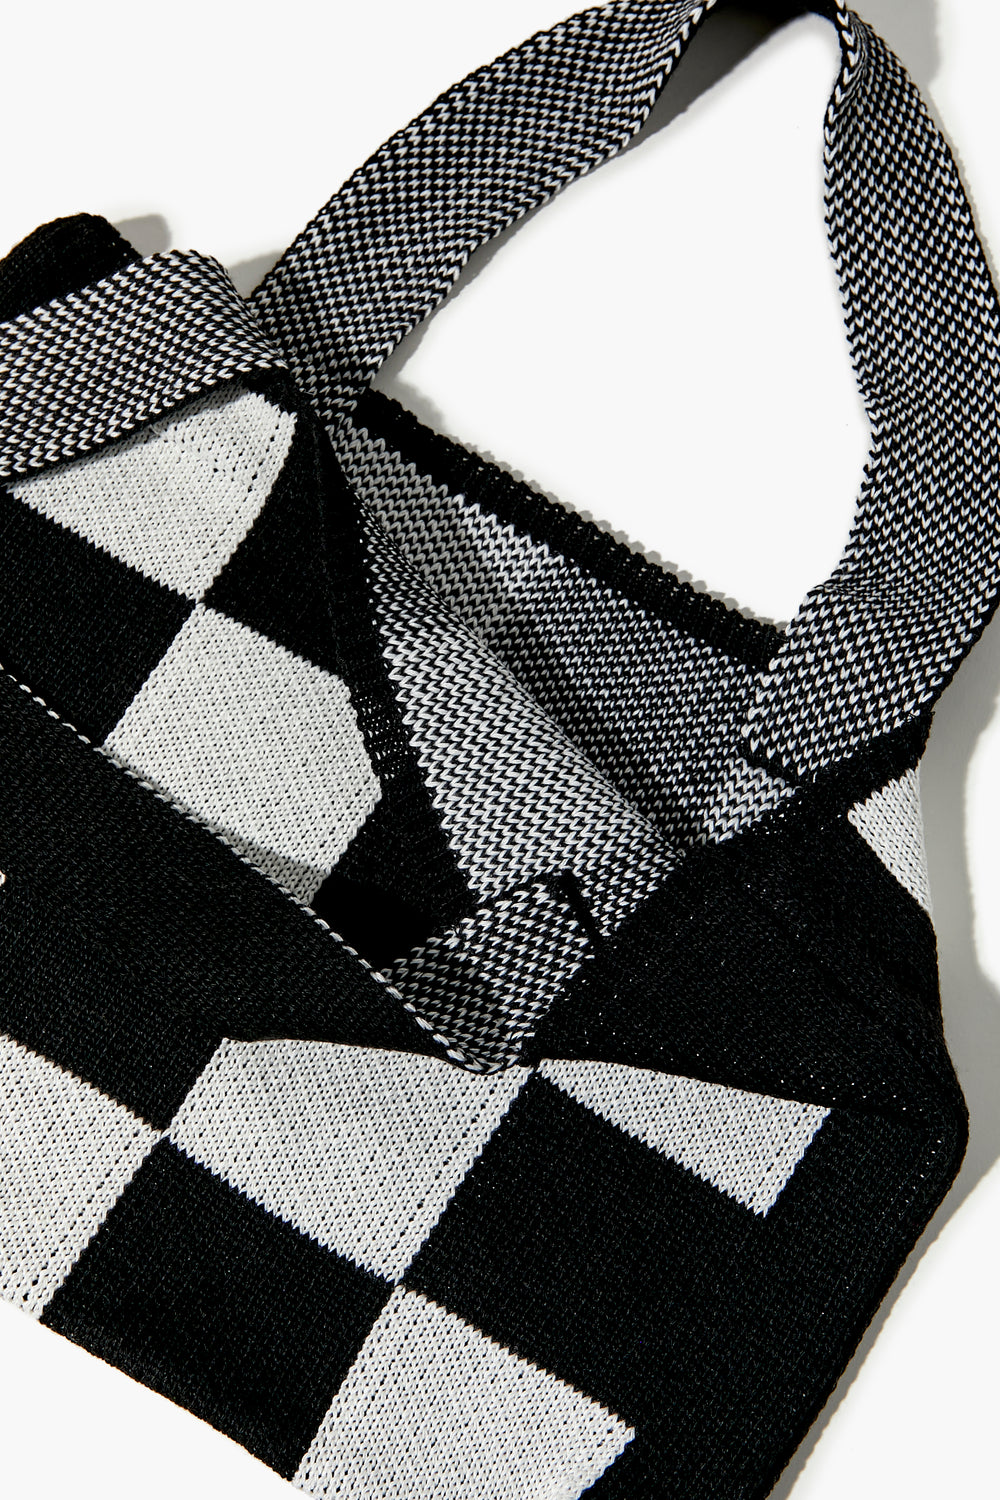 Checkered Knit Handbag Black